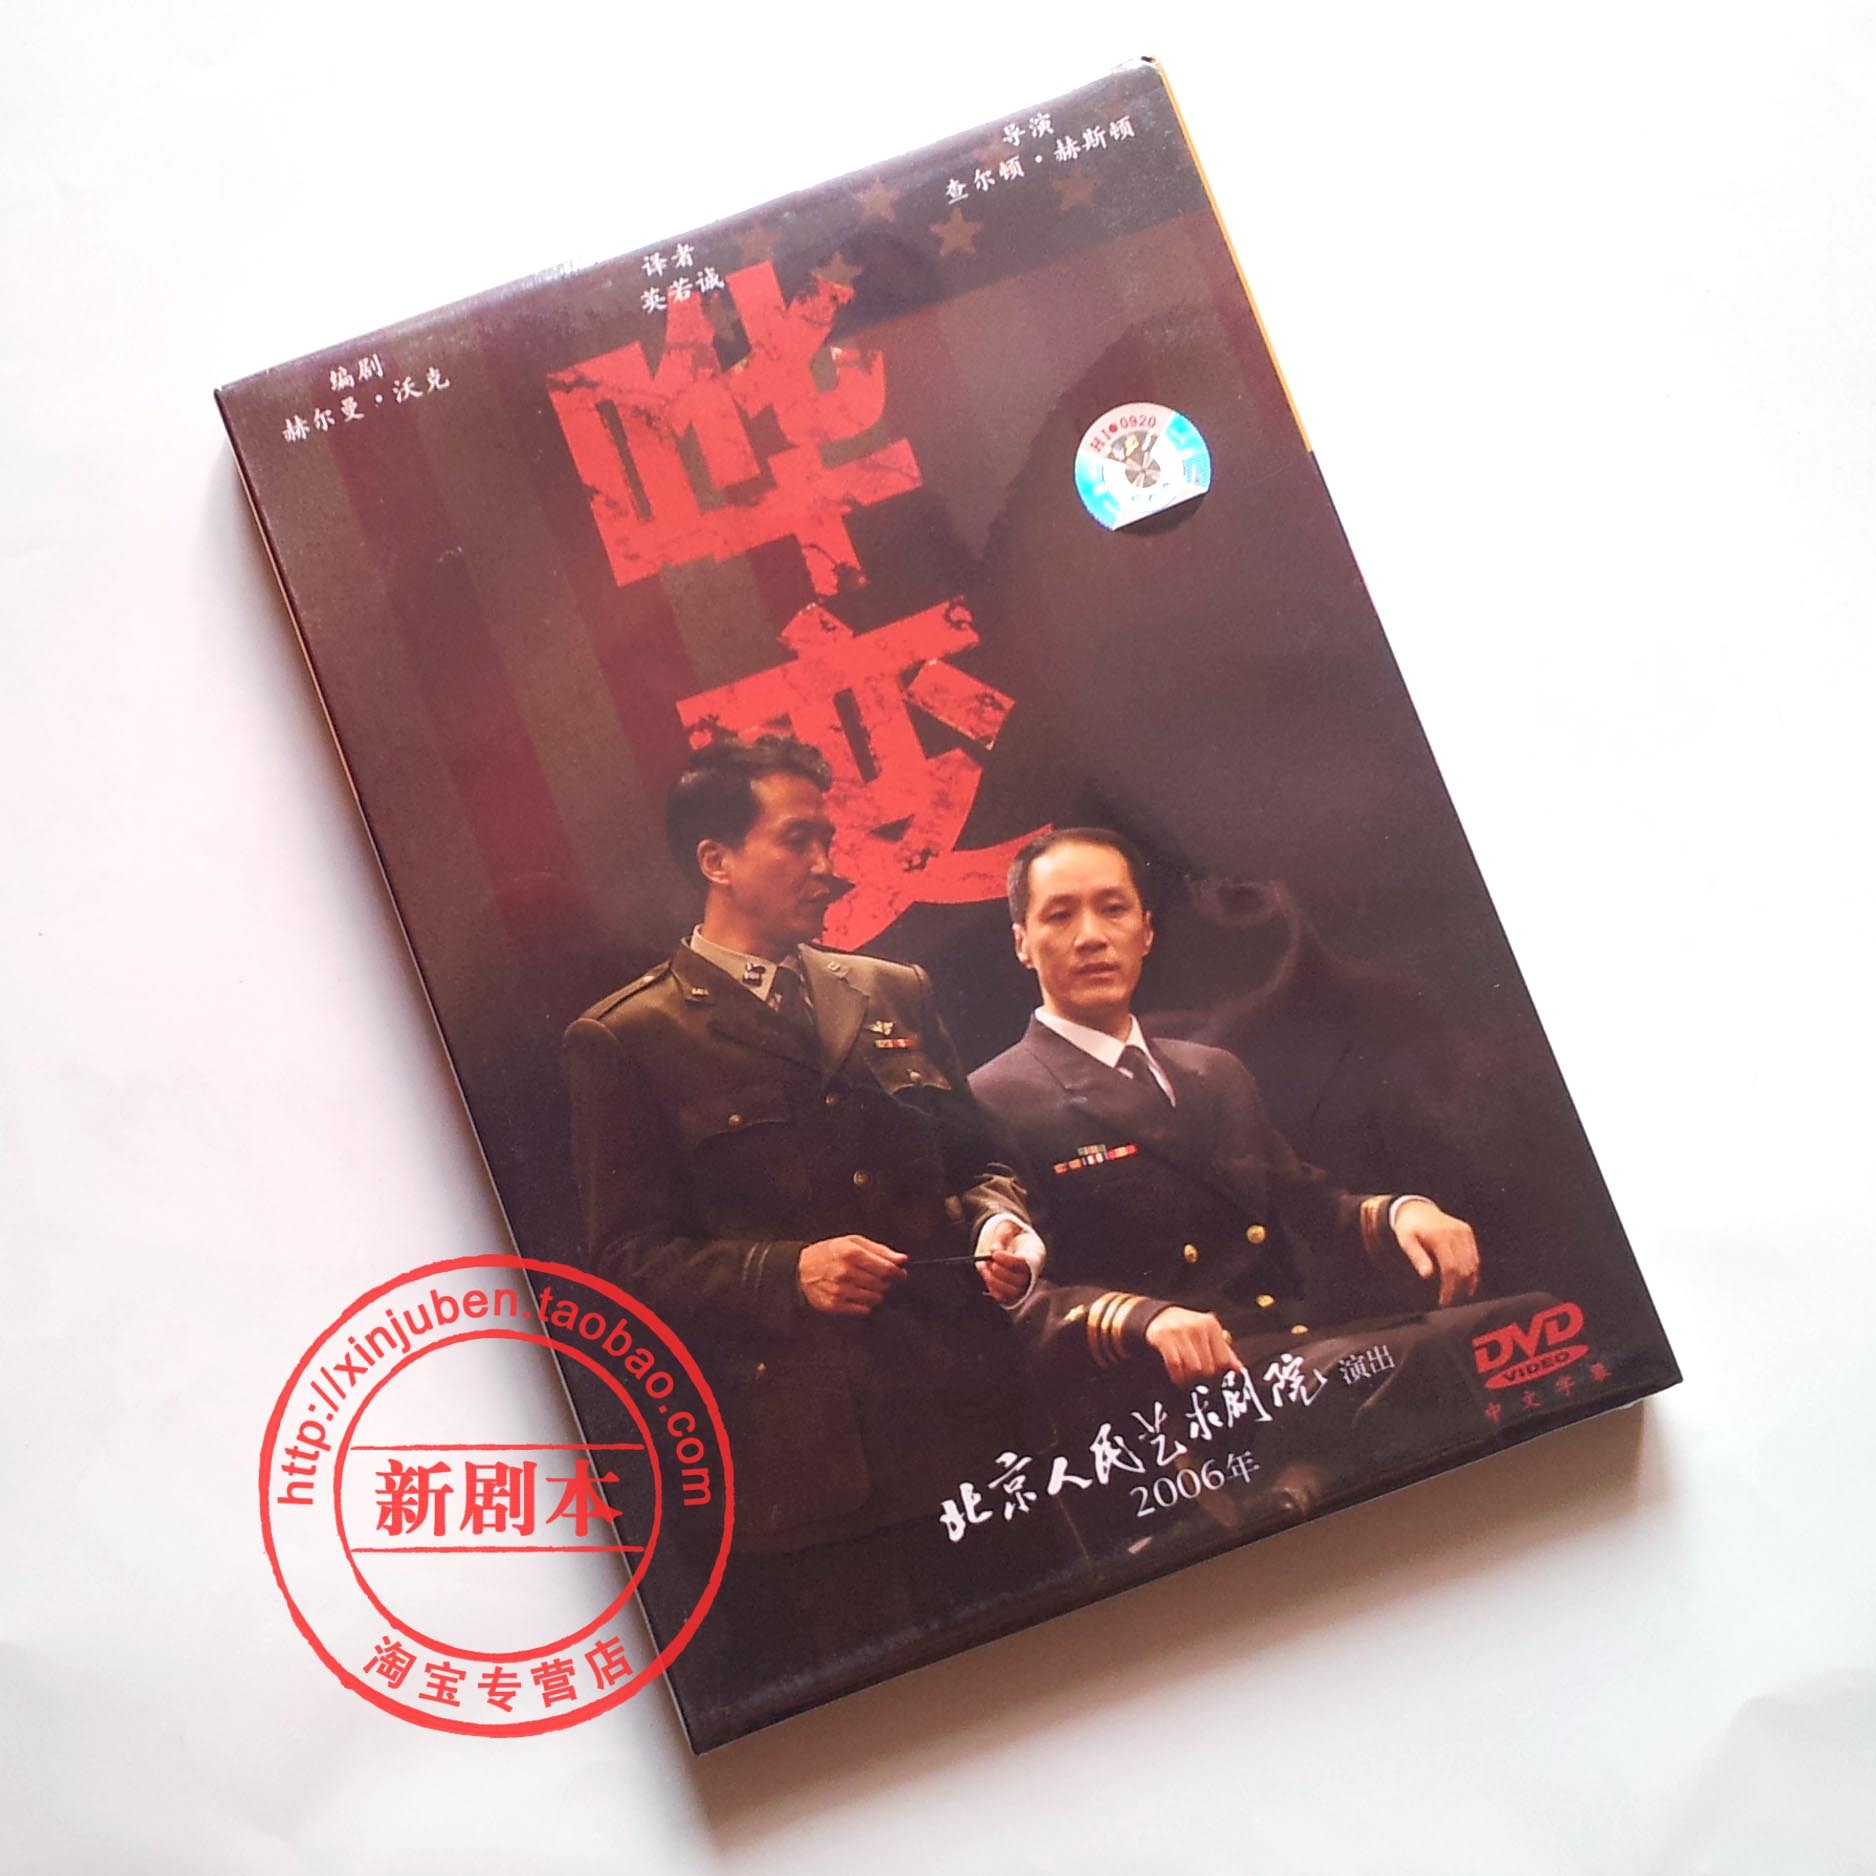 正版北京人艺经典话剧《哗变》06版DVD 冯远